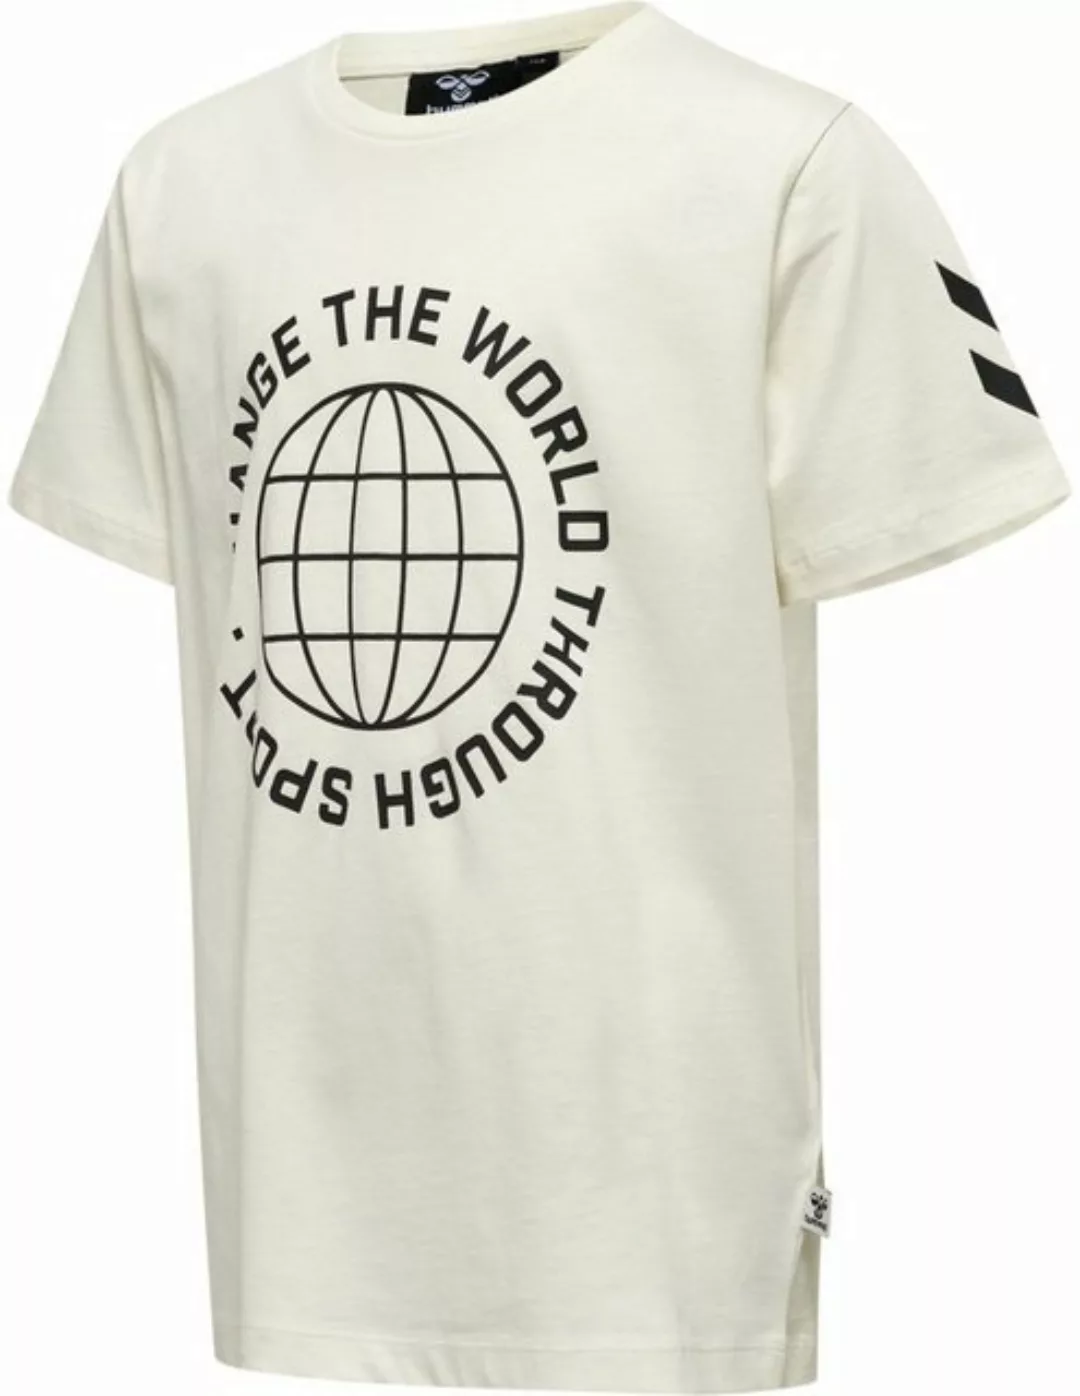 hummel T-Shirt günstig online kaufen